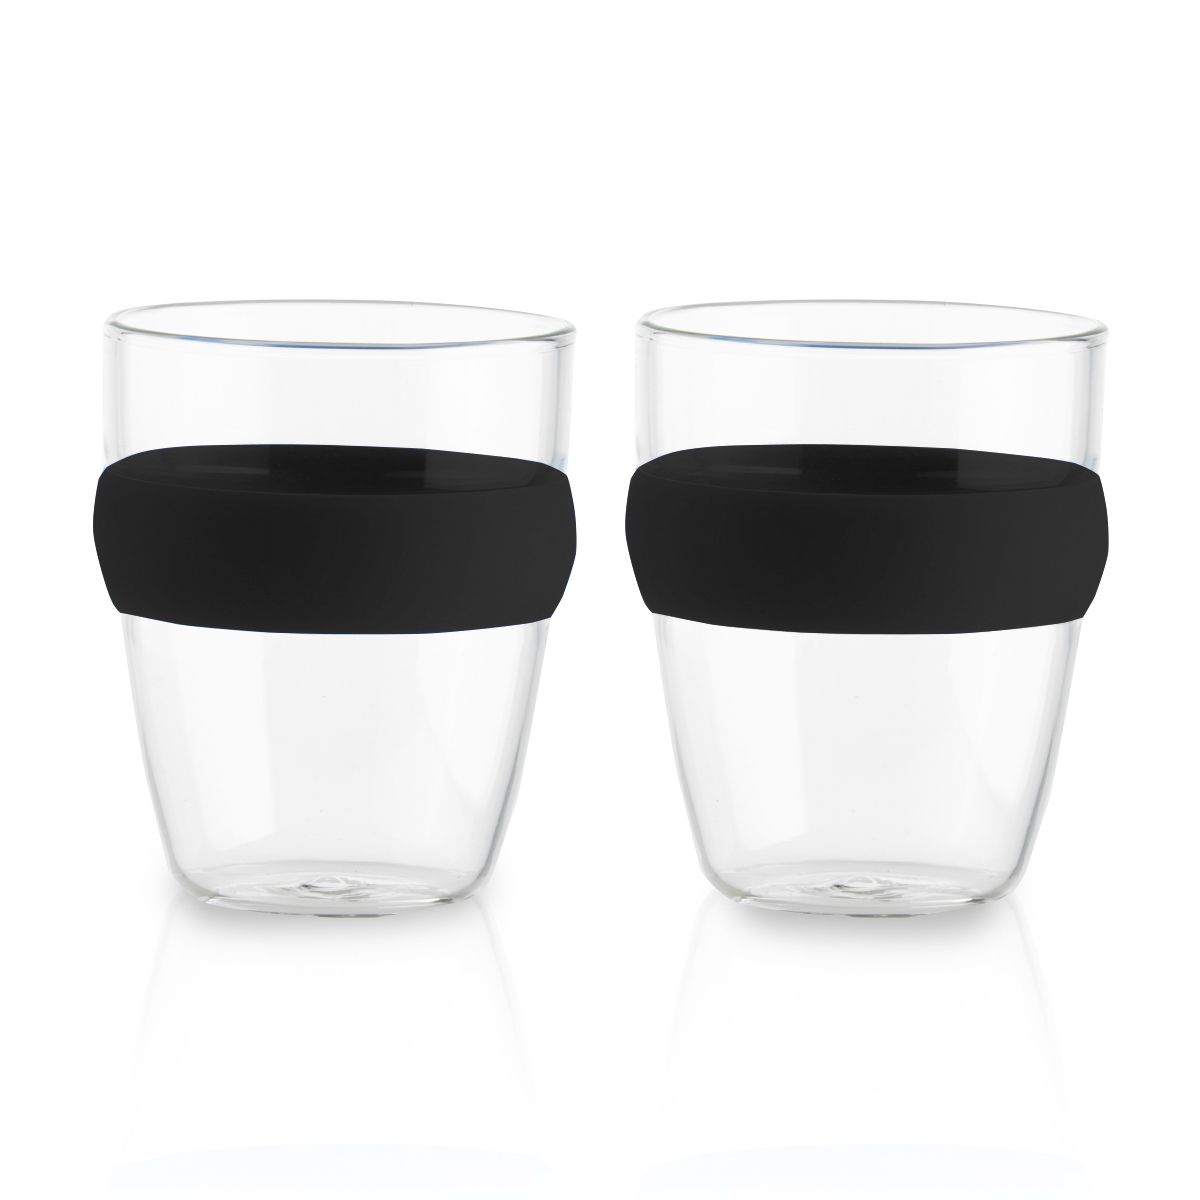 זוג כוסות זכוכית עם חבק 150 מ”ל אינדונזיה 2 שחור